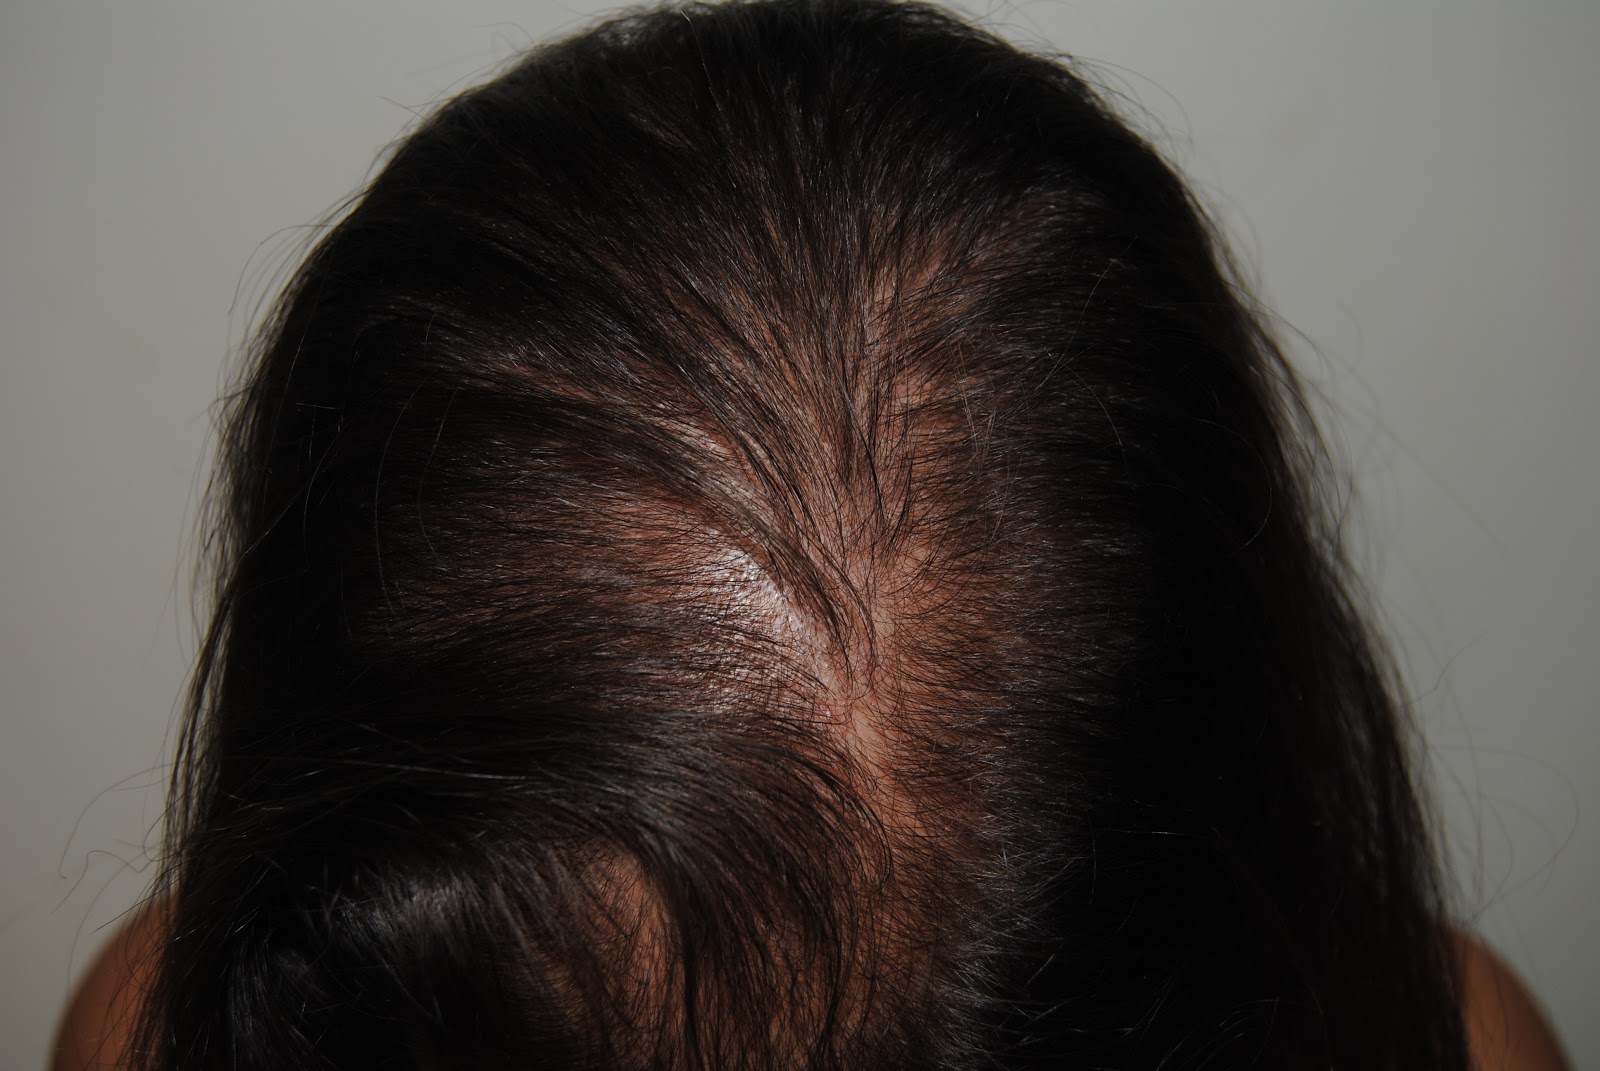 Babosa de mar impulso Saturar Dermatologo-Valencia: Se me cae el pelo, tratamientos para la caída de  cabello...¿por qué me cae el pelo? Algunas preguntas con respuesta en la  caída del cabello